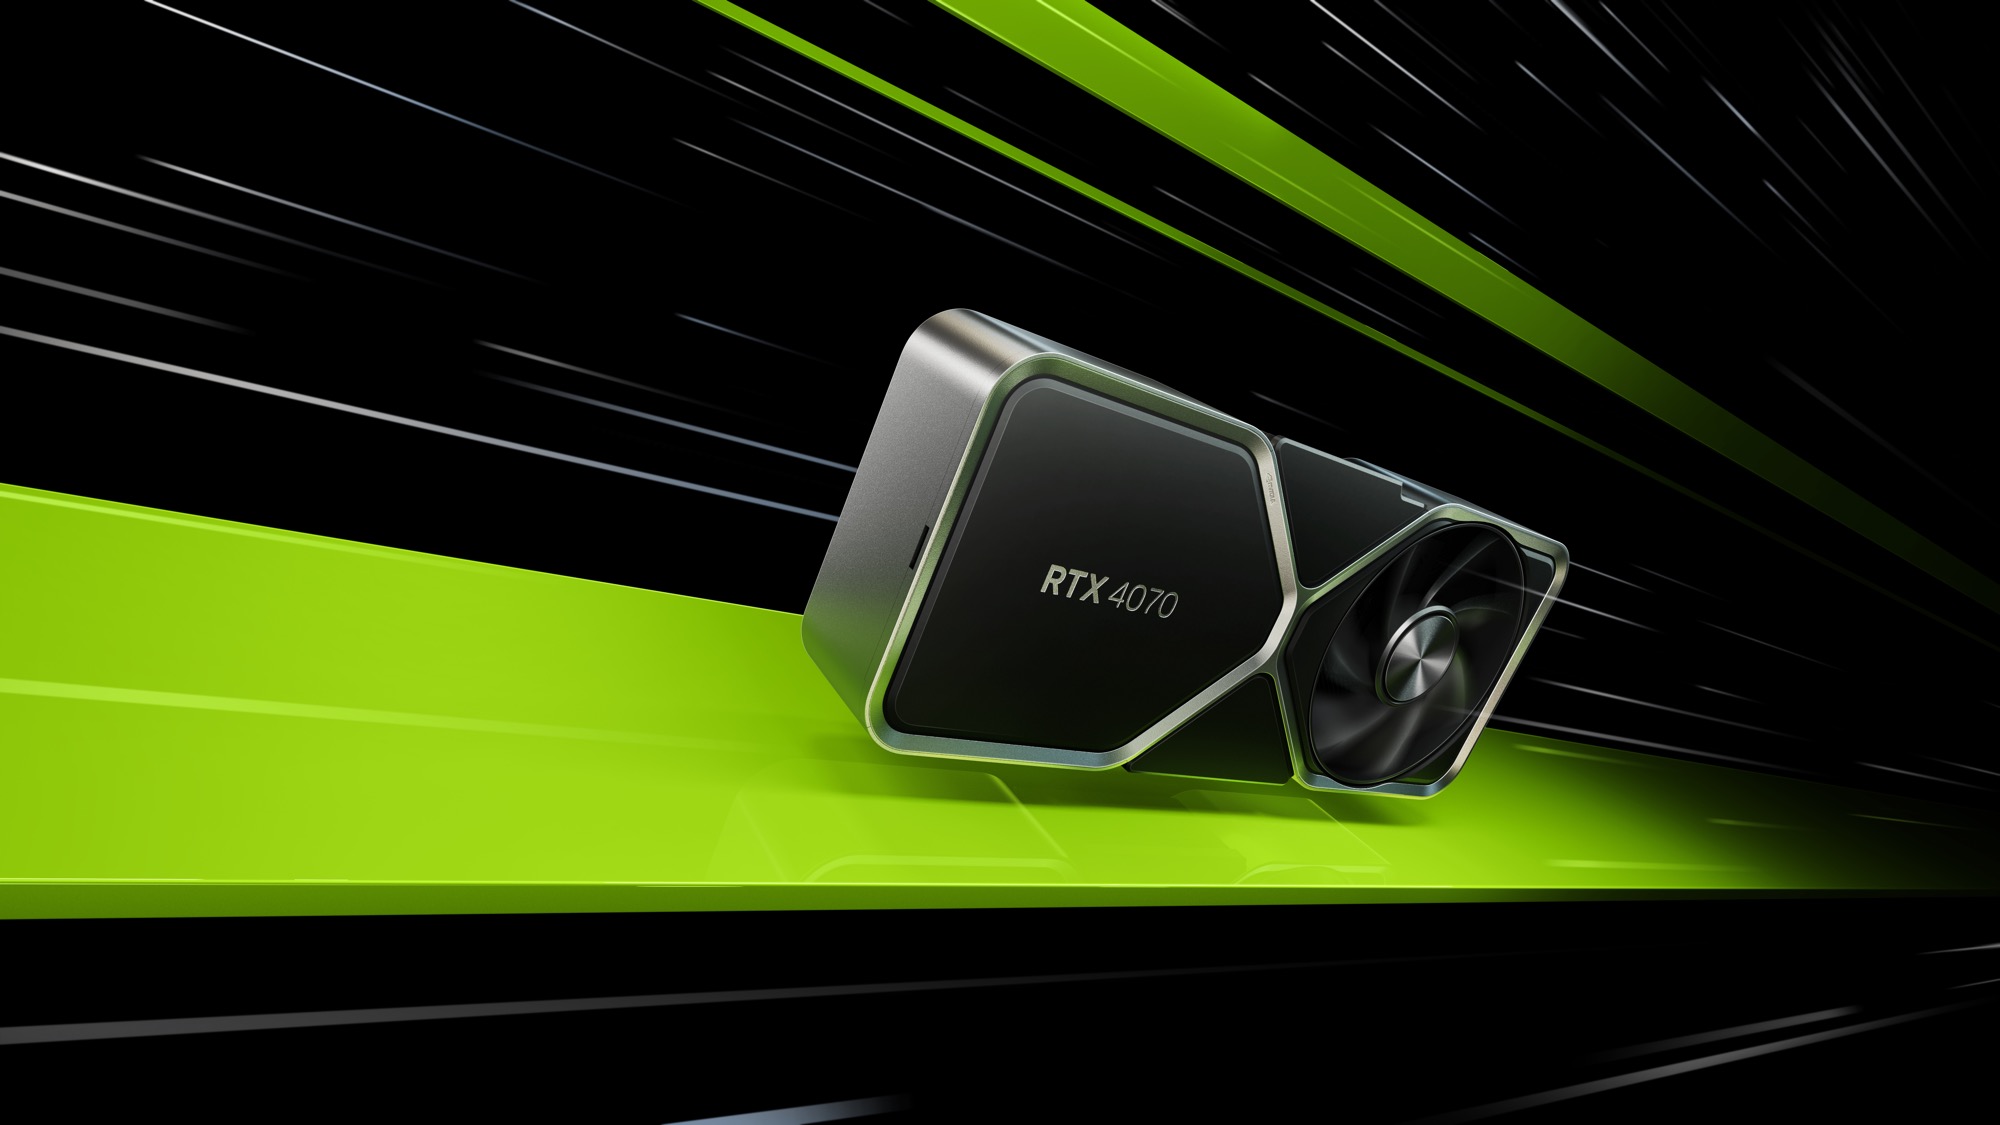 Nvidia GeForce RTX 4060 Ti : la carte graphique lancée ce mois-ci